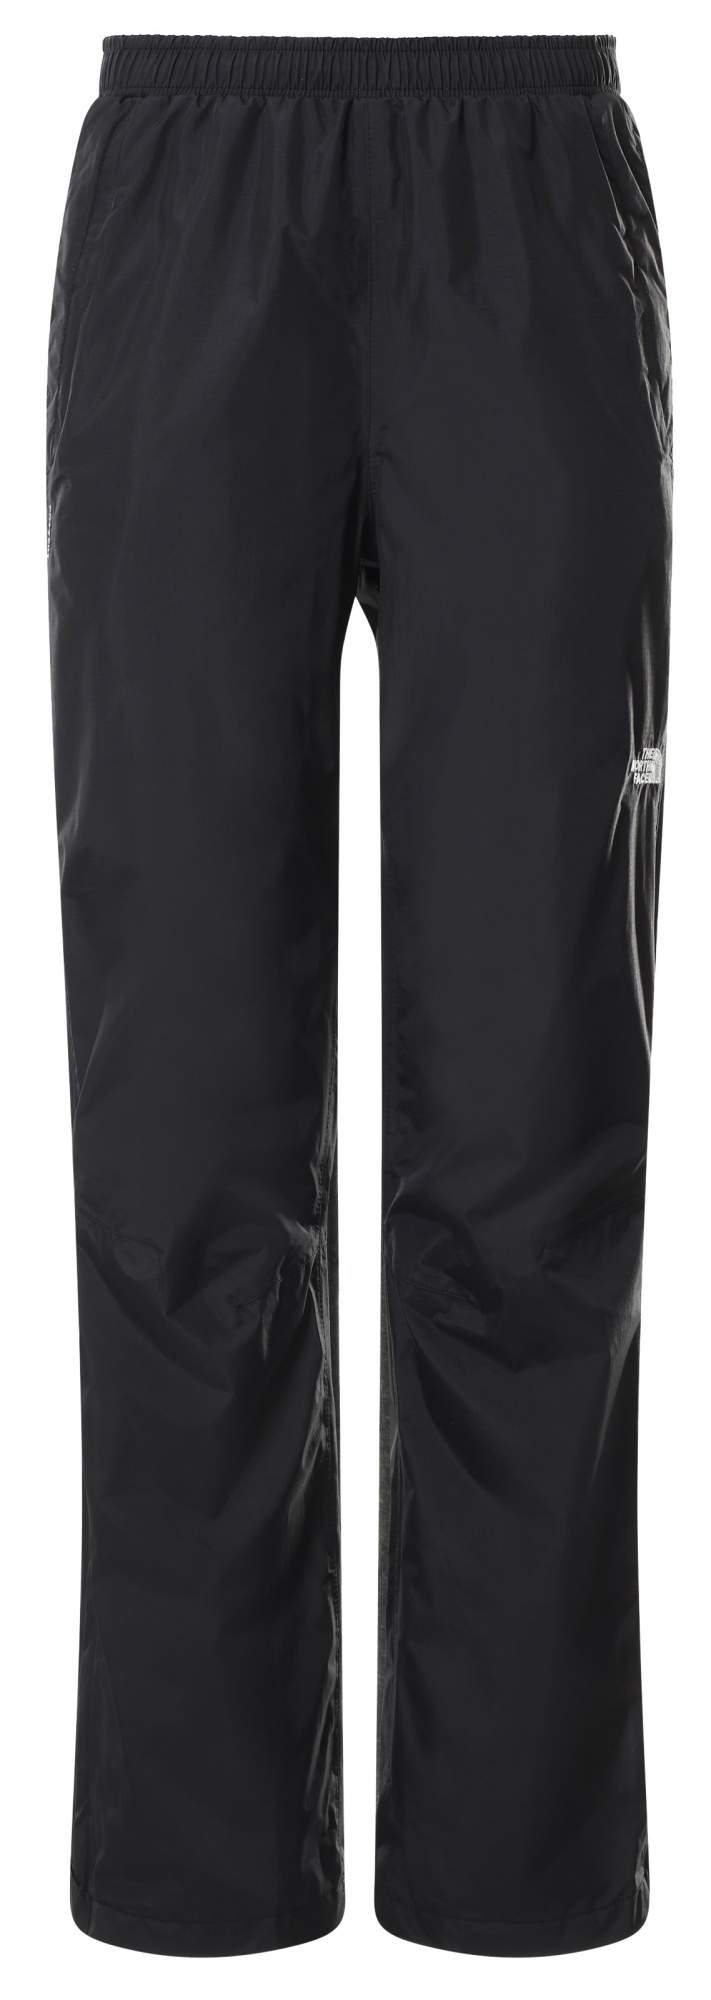 Спортивные брюки женские The North Face Scalino Shell Trousers W черные L